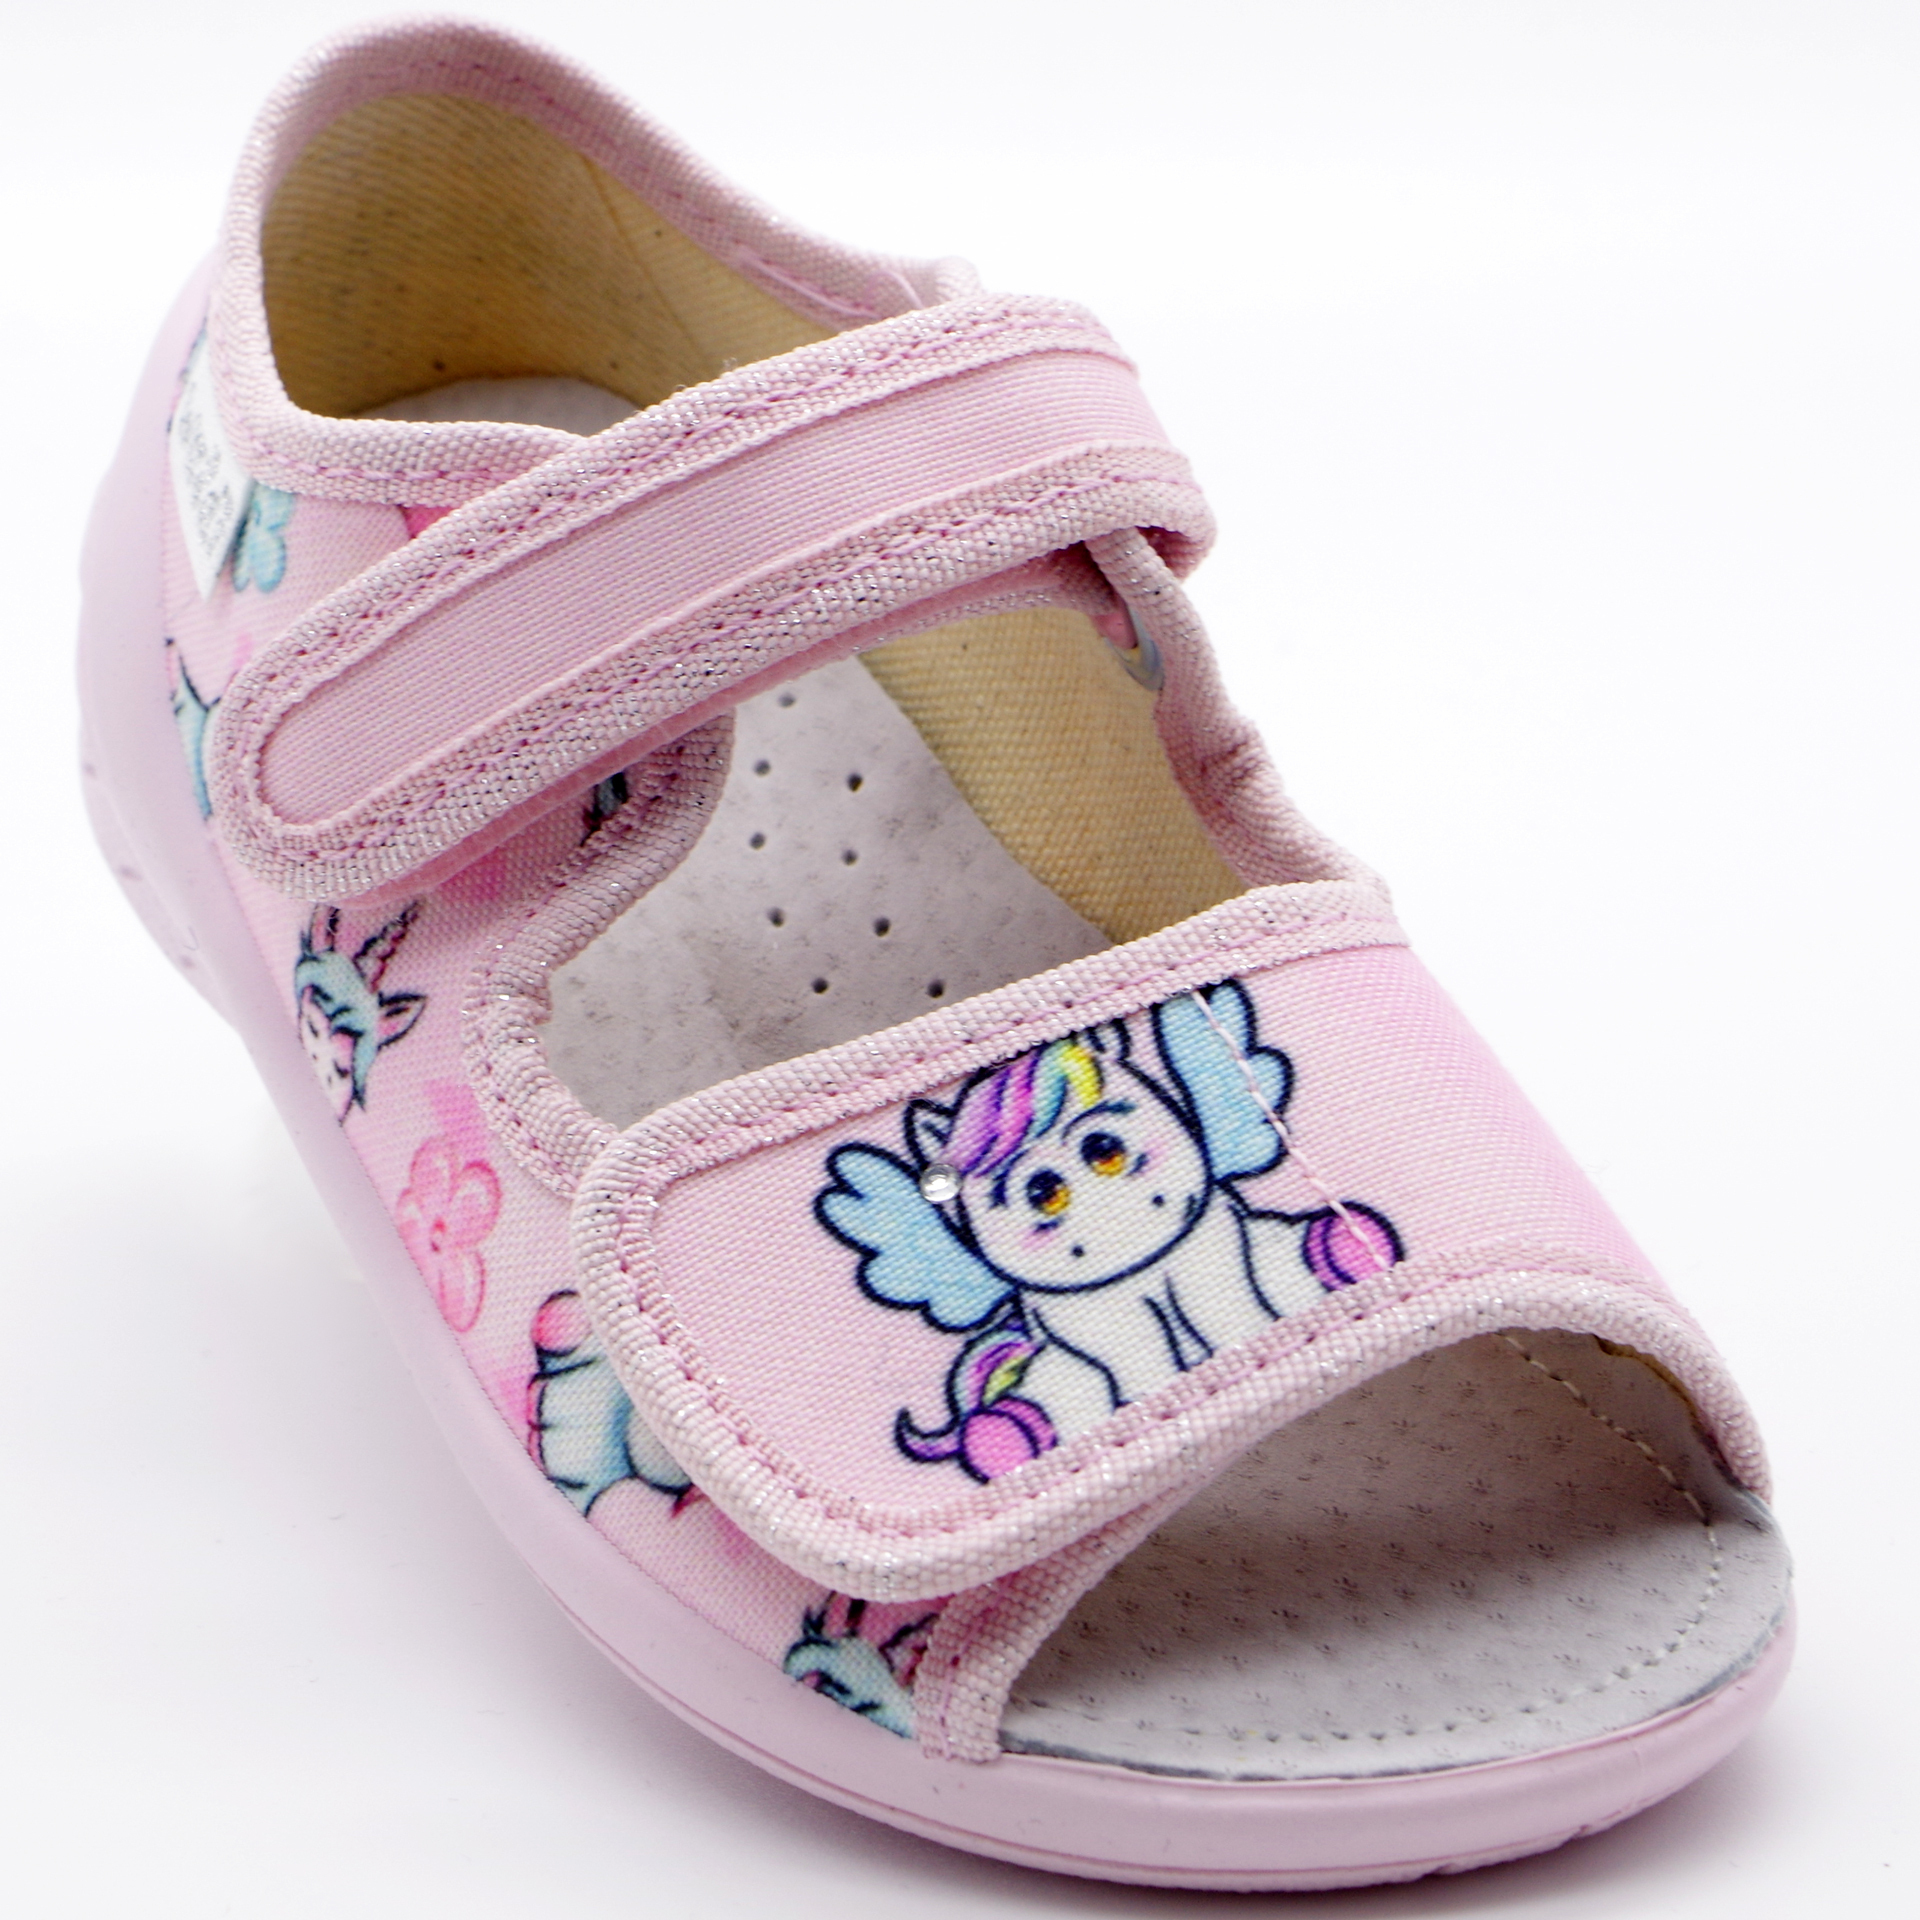 Текстильная обувь для девочек Тапочки Ева Единорог (2180) цвет Микс 23-30 размеры – Sole Kids